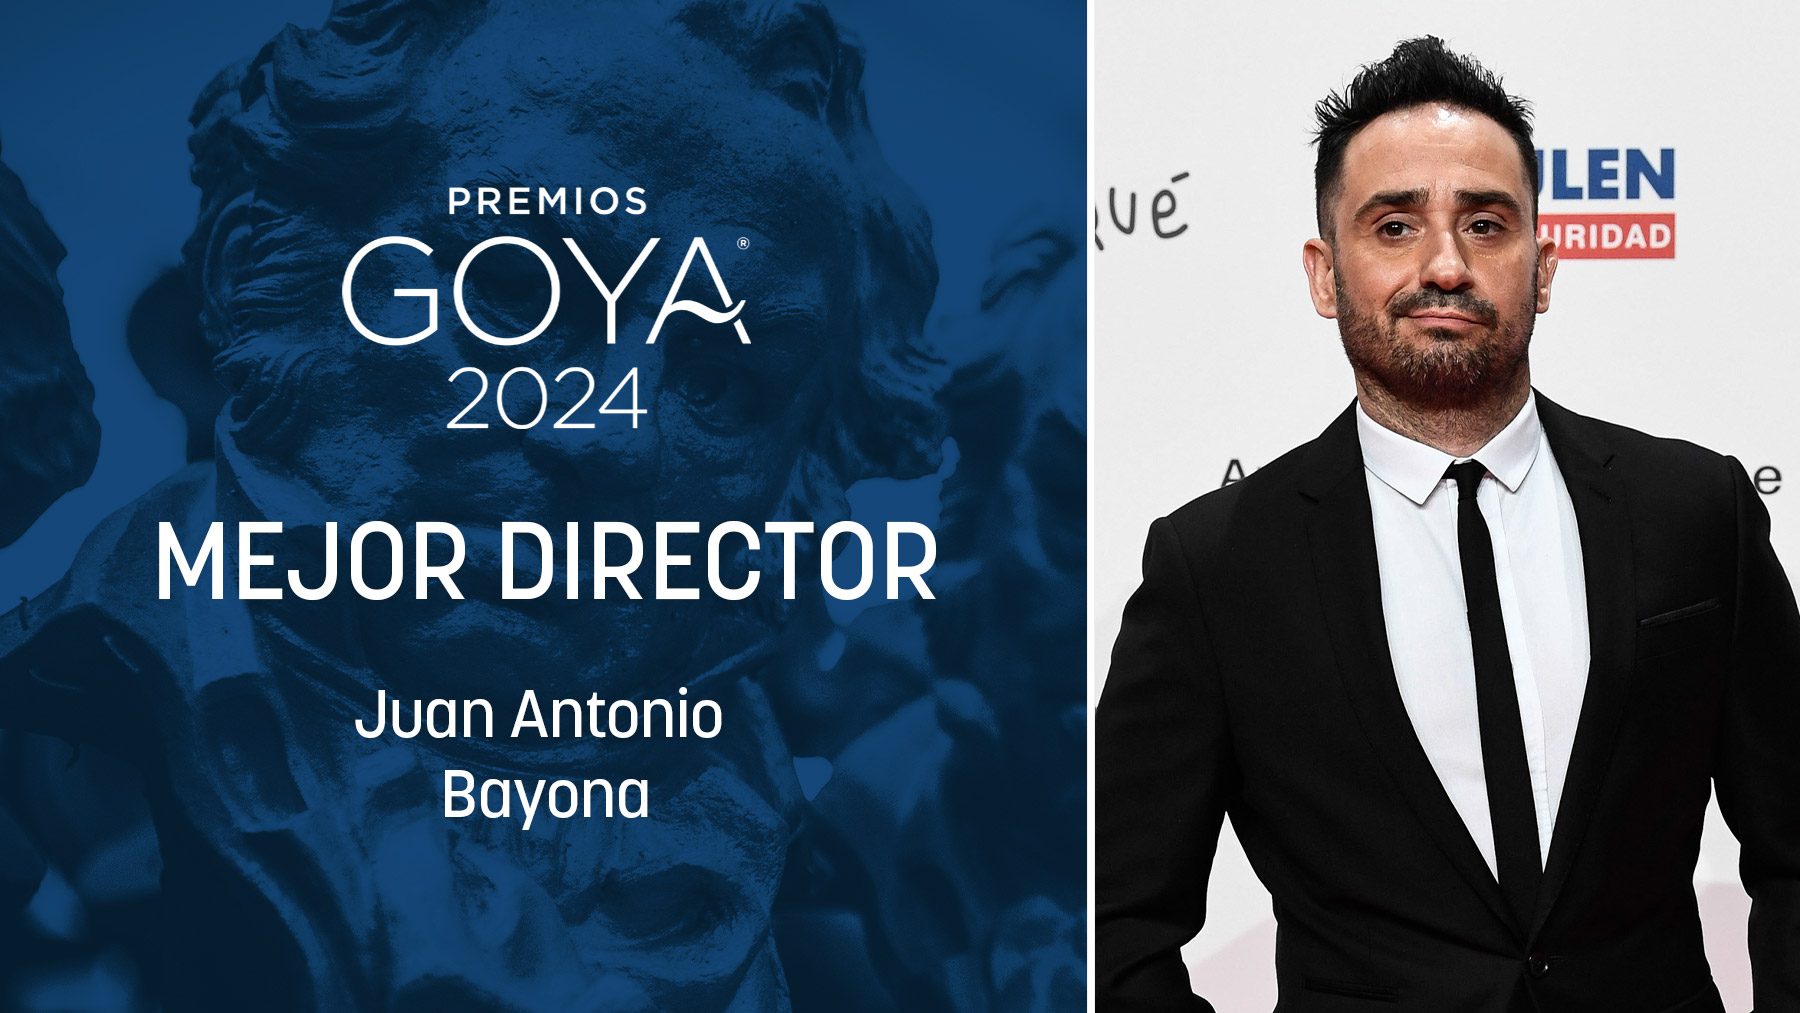 Premios-goya-mejor-director-Juan-Antonio-Bayona-2024–Interior